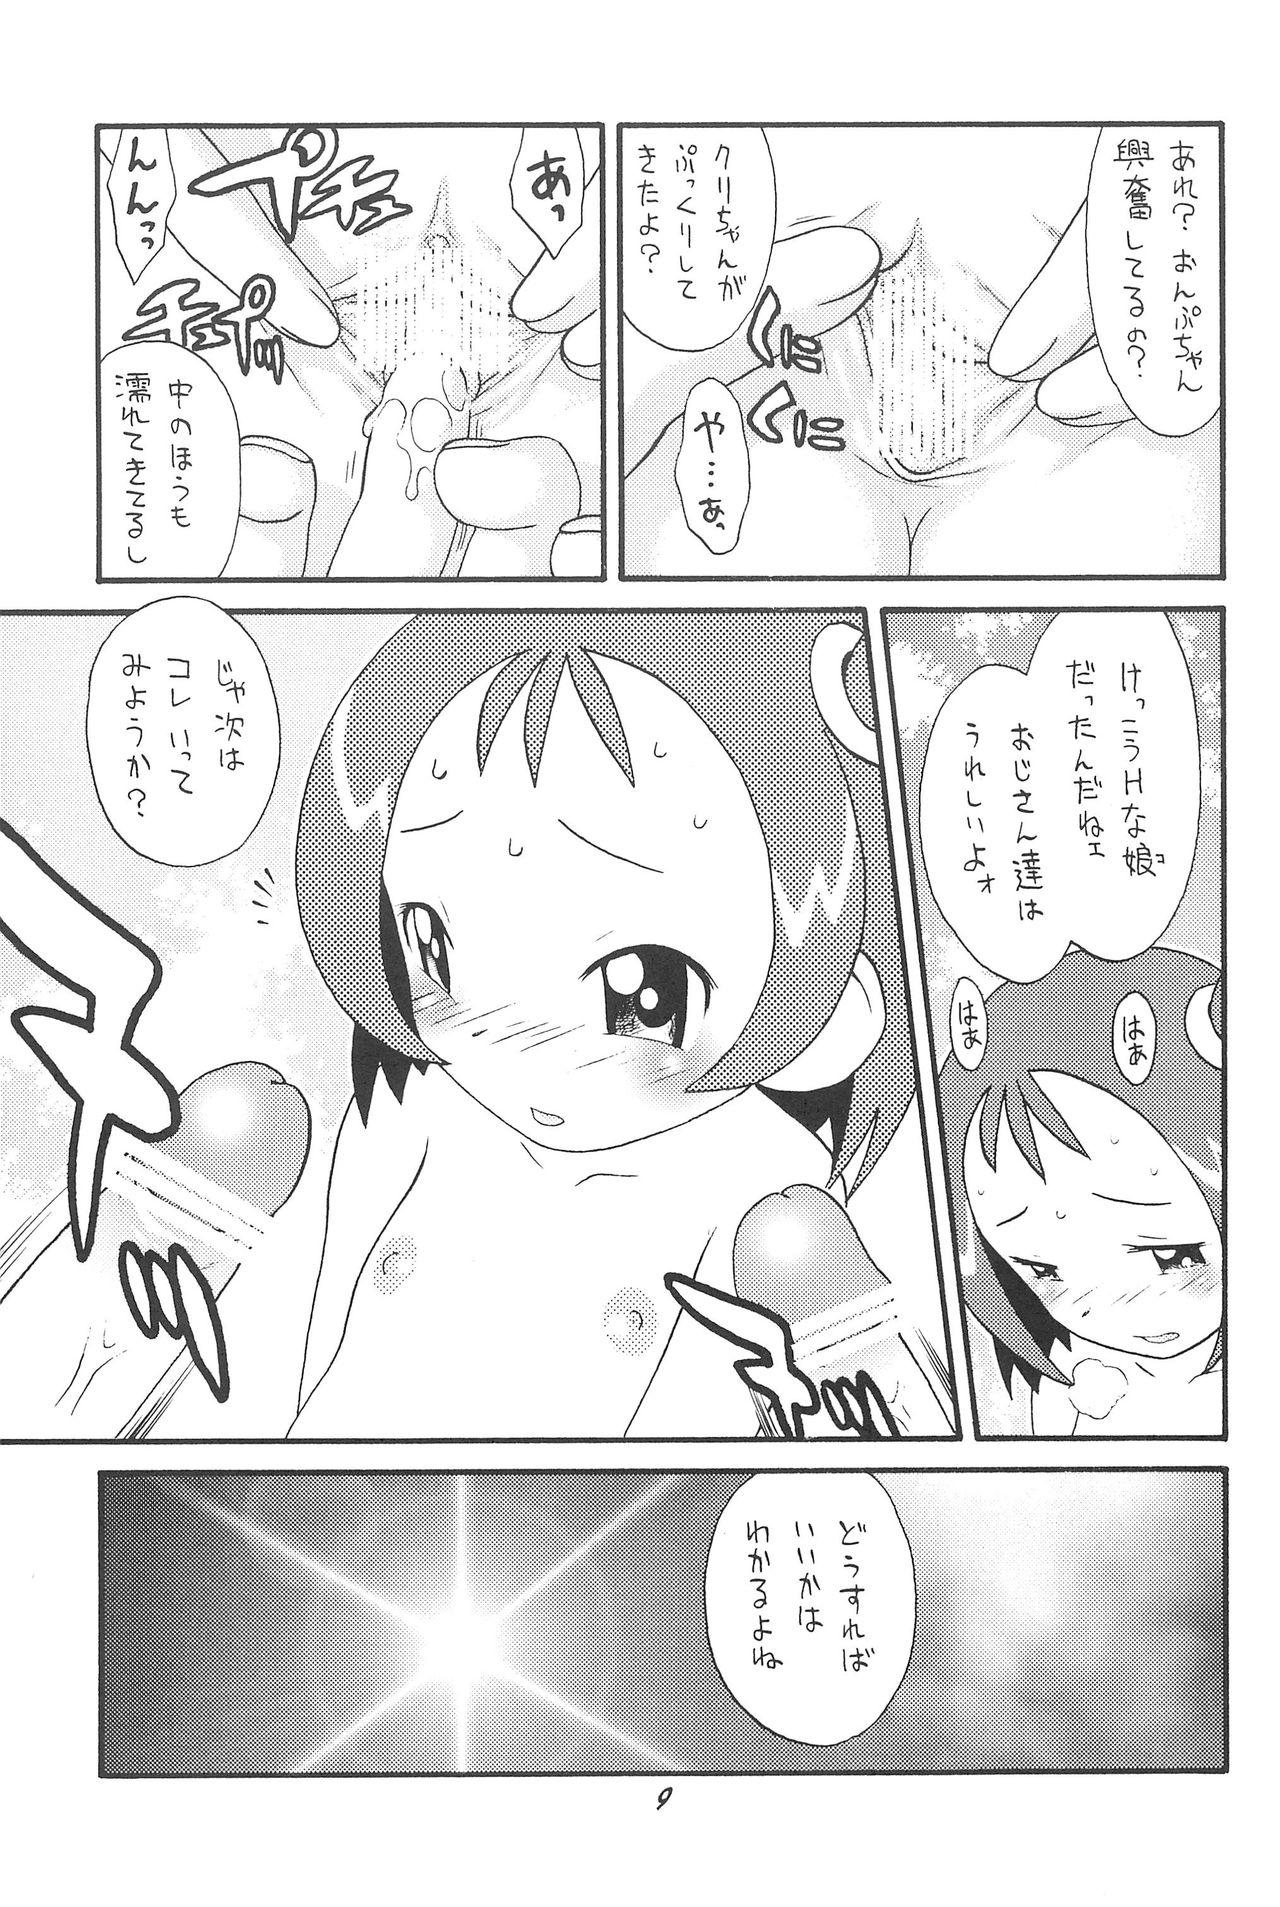 Ruiva Hinnyuu Musume 06 - Ojamajo doremi Ftvgirls - Page 11